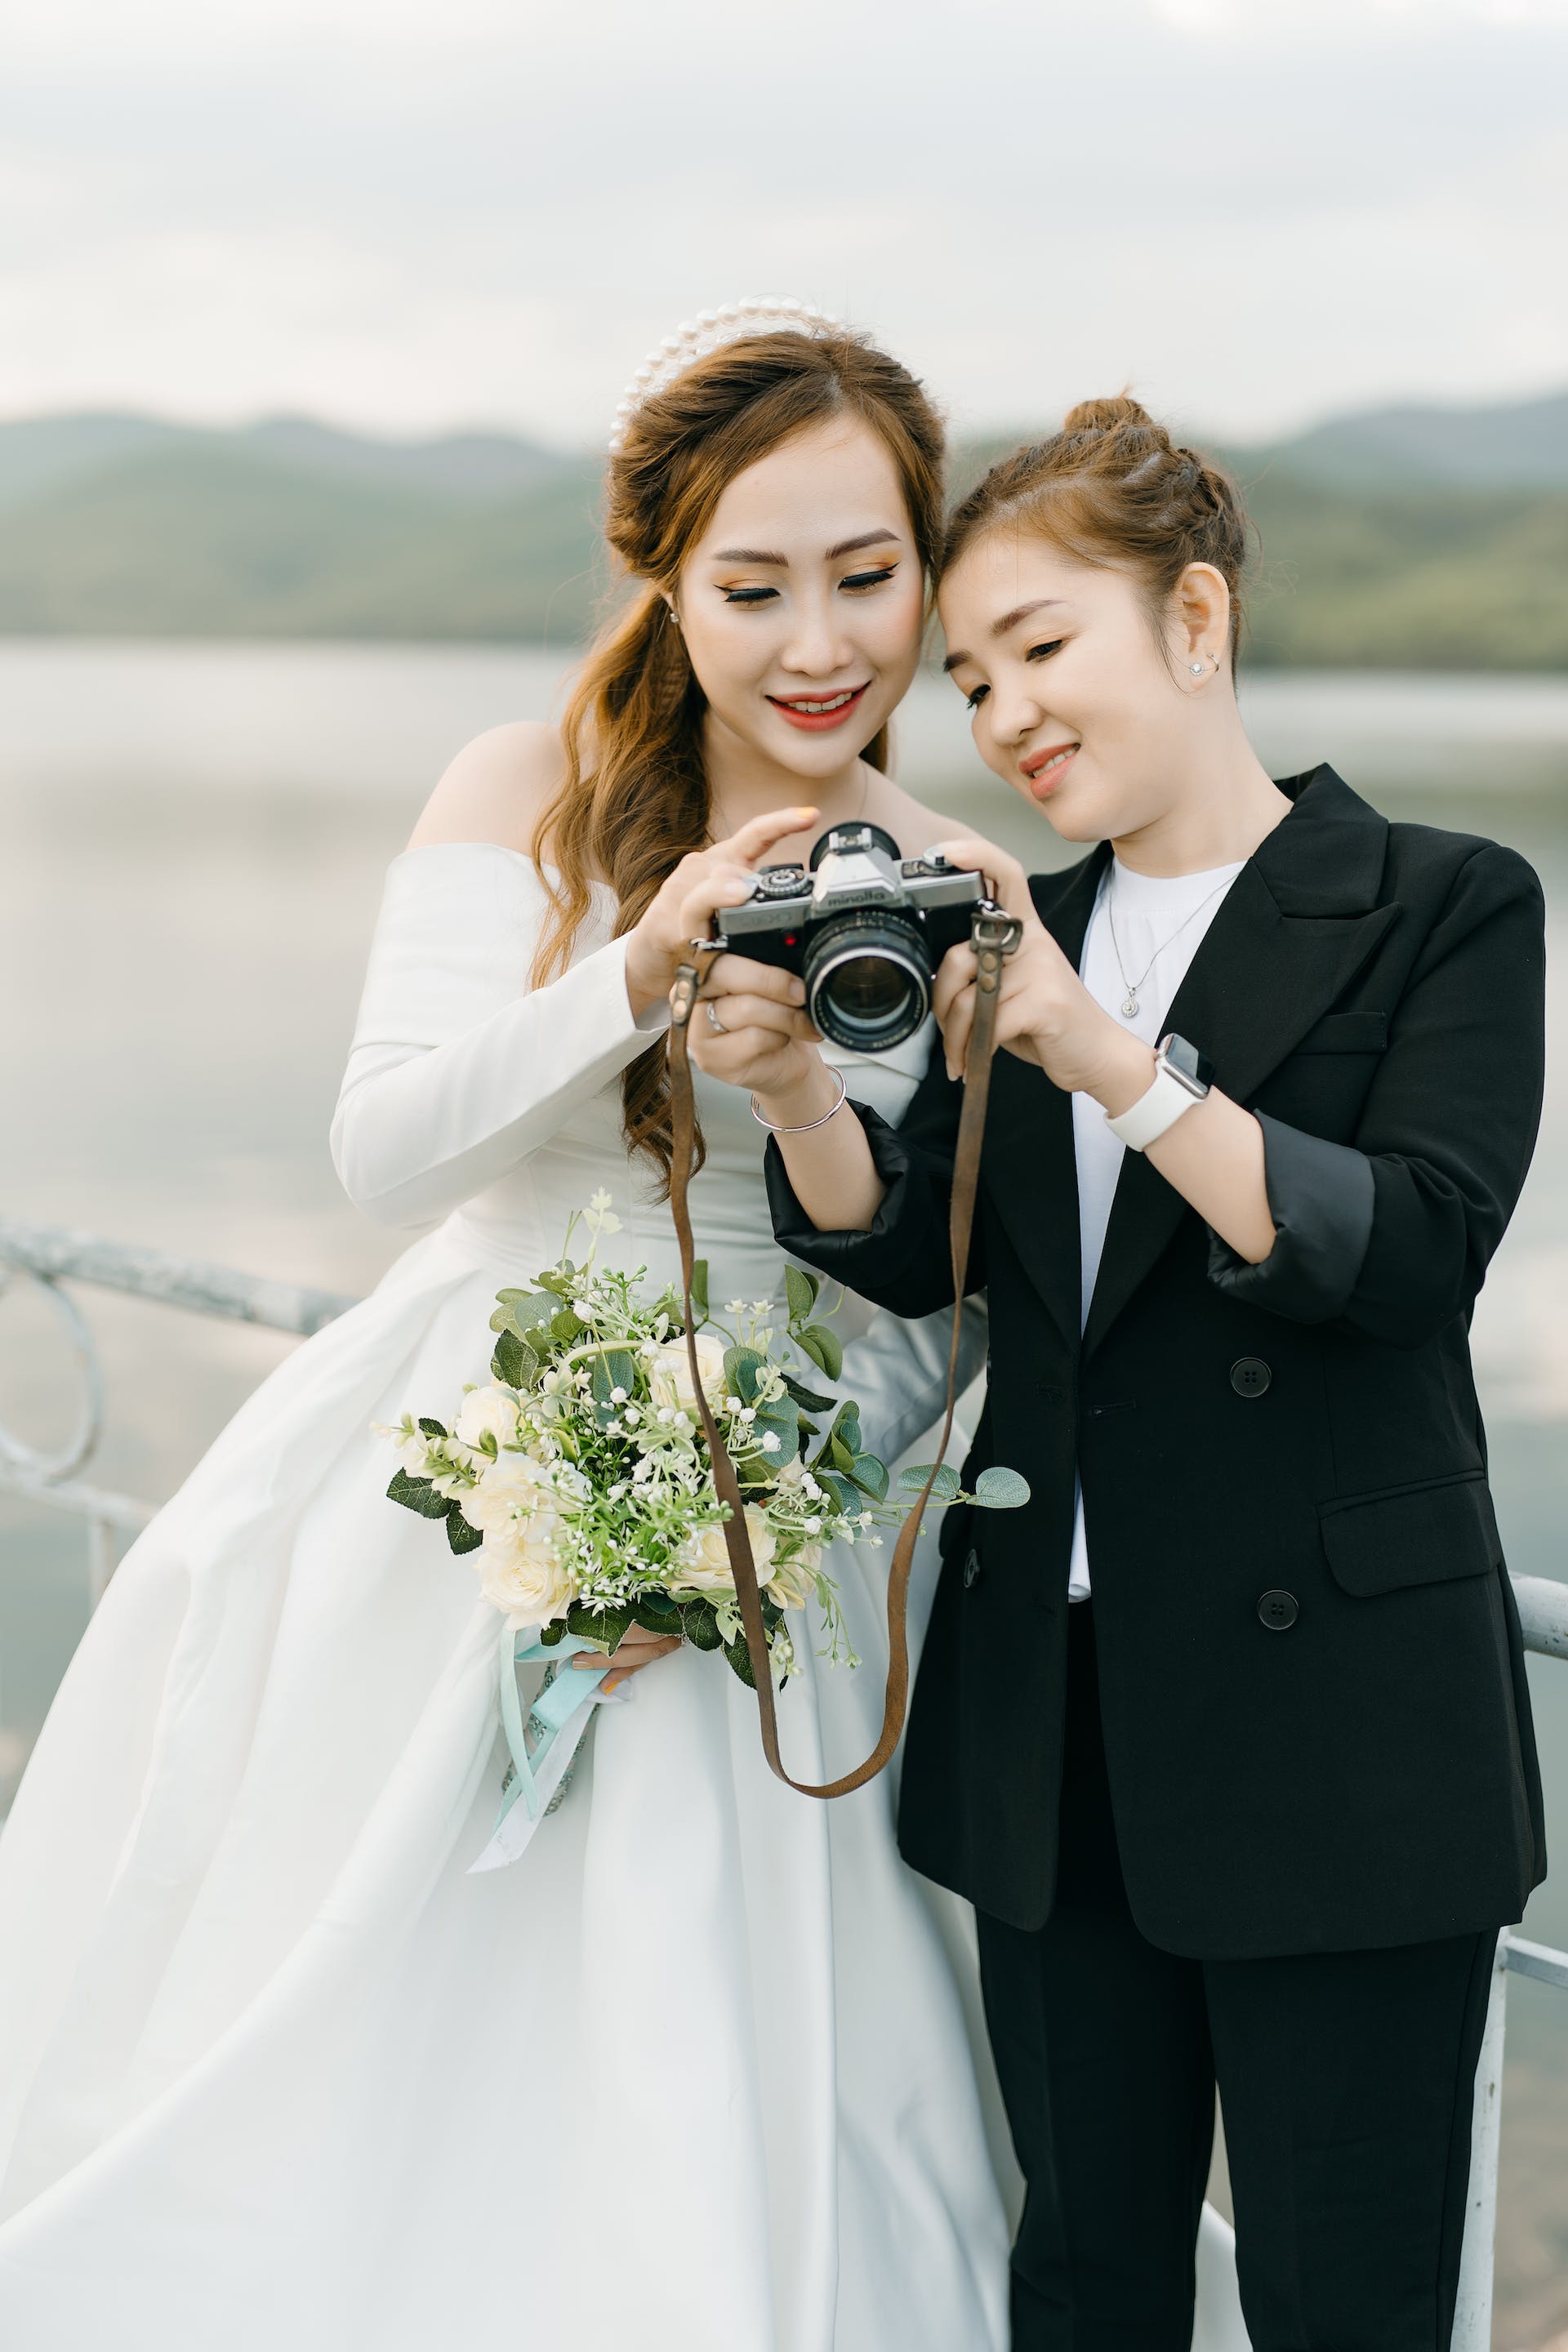 Un fotógrafo enseñando fotos a una novia | Fuente: Pexels